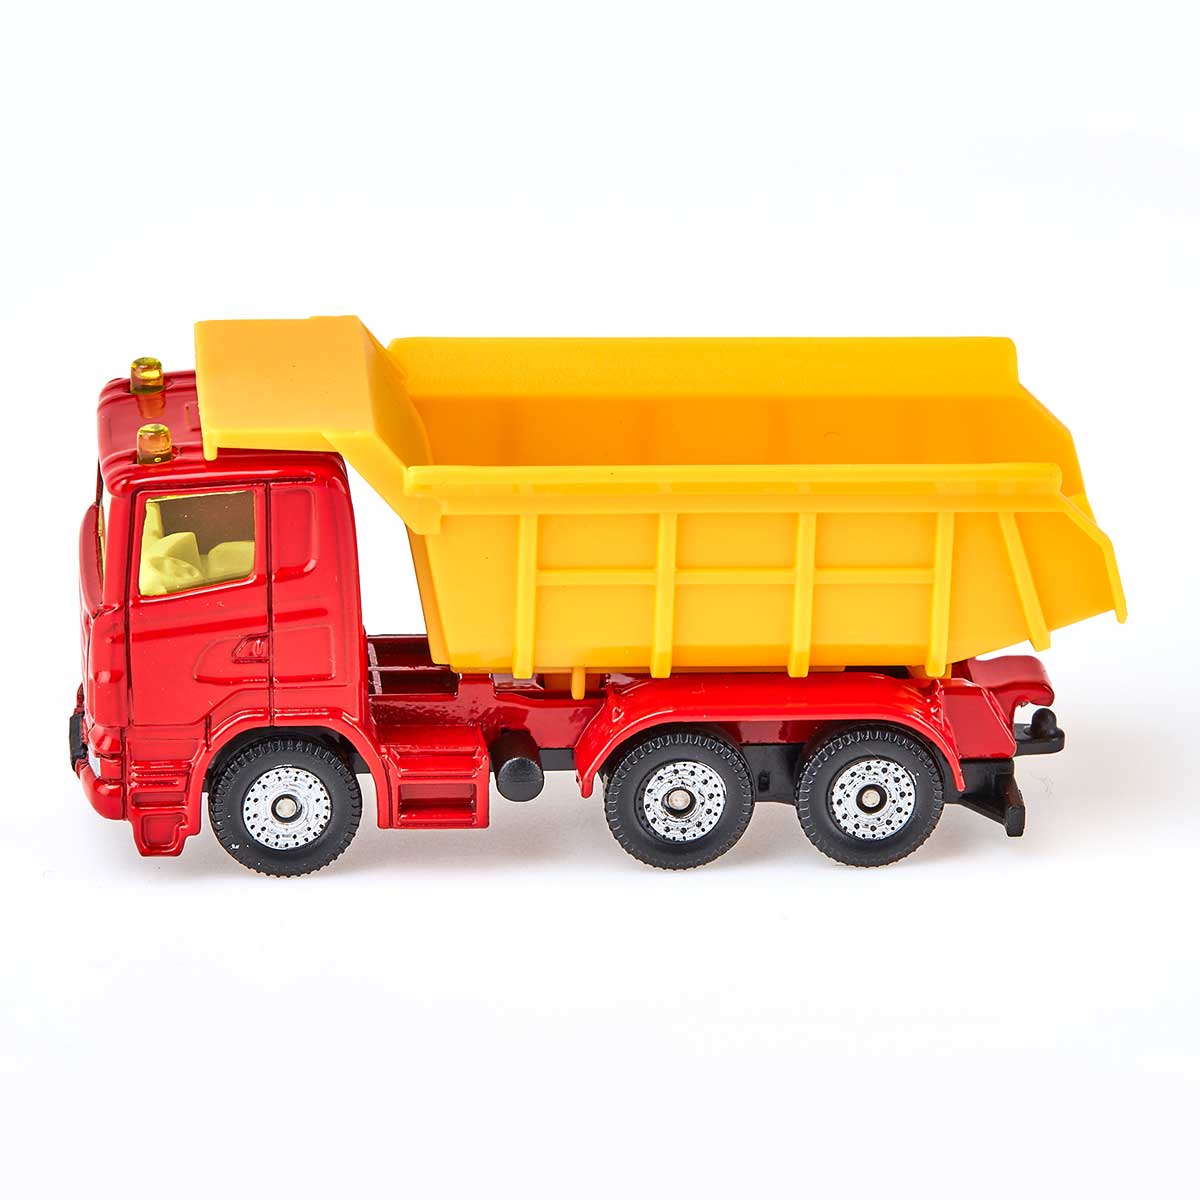 工事車両セットS: ボーネルンド オンラインショップ。世界中の知育玩具 